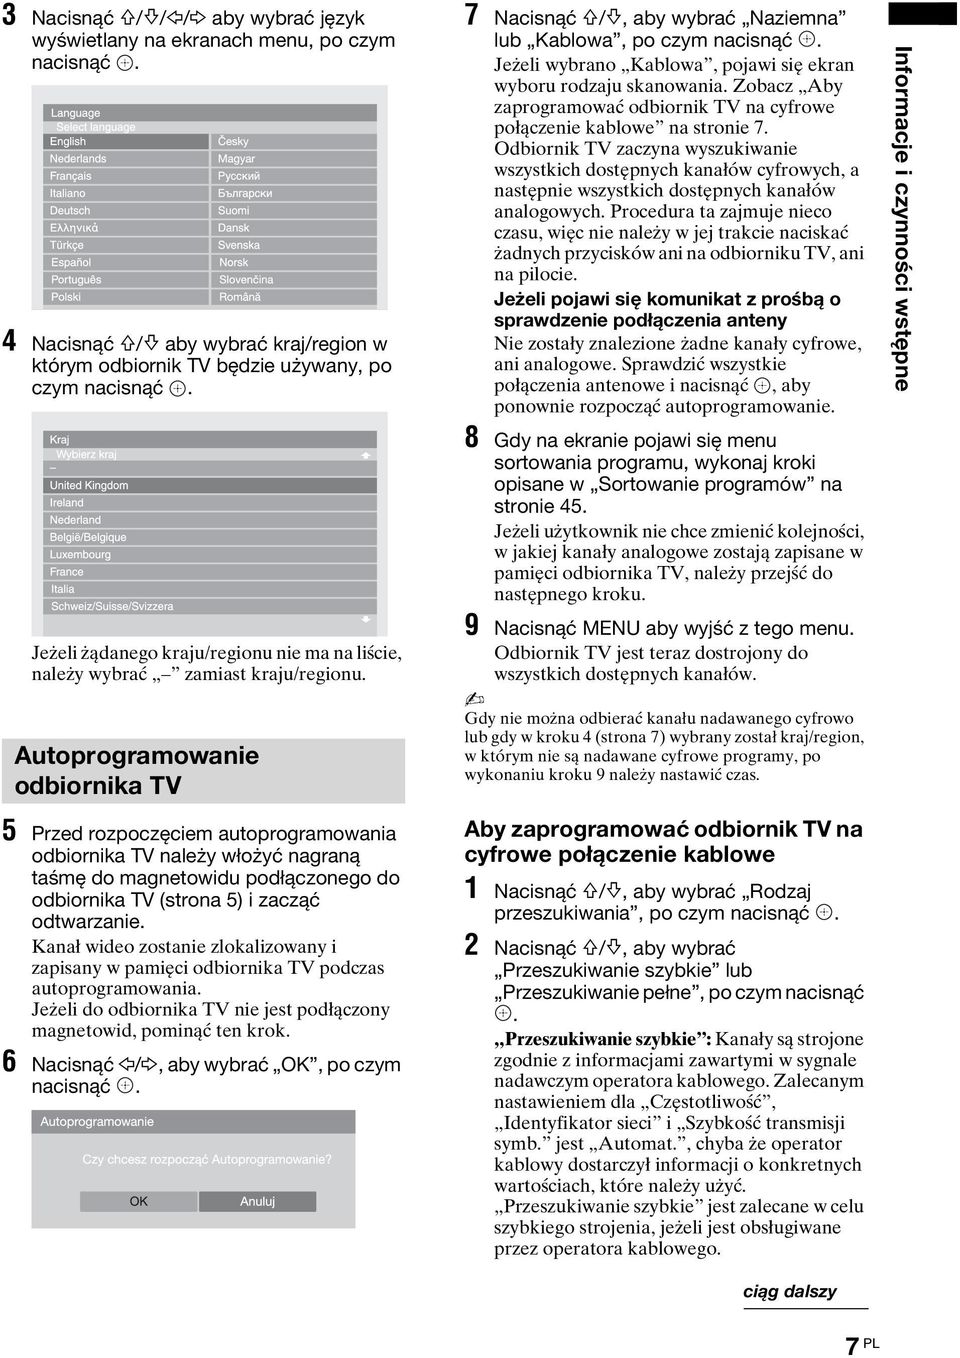 Autoprogramowanie odbiornika TV 5 Przed rozpoczęciem autoprogramowania odbiornika TV należy włożyć nagraną taśmę do magnetowidu podłączonego do odbiornika TV (strona 5) i zacząć odtwarzanie.